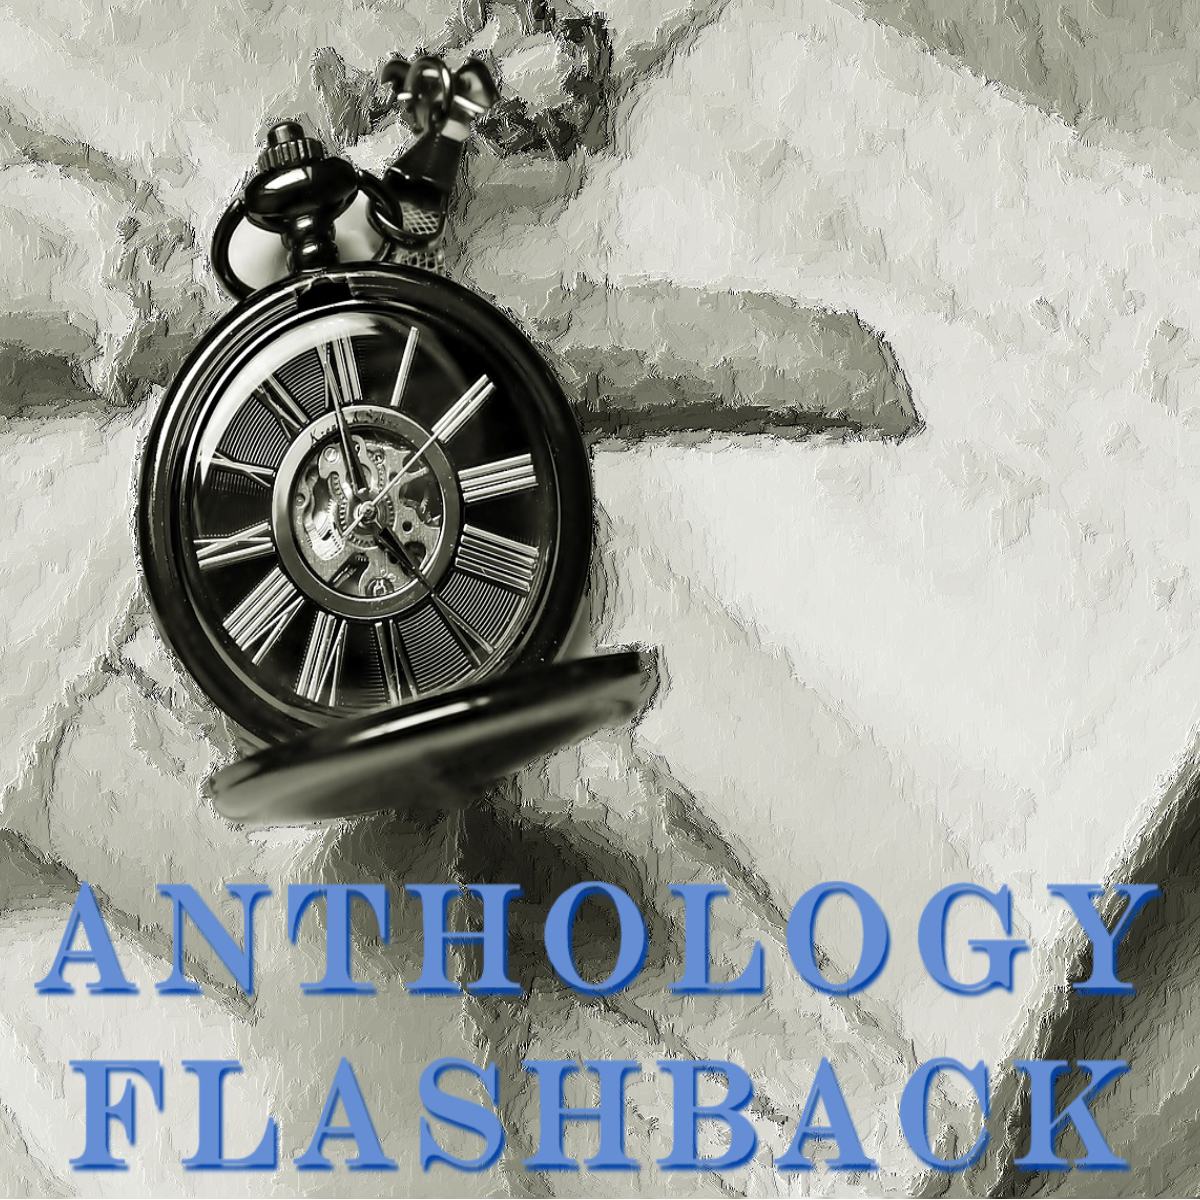 FB Flashback Anthology.jpg